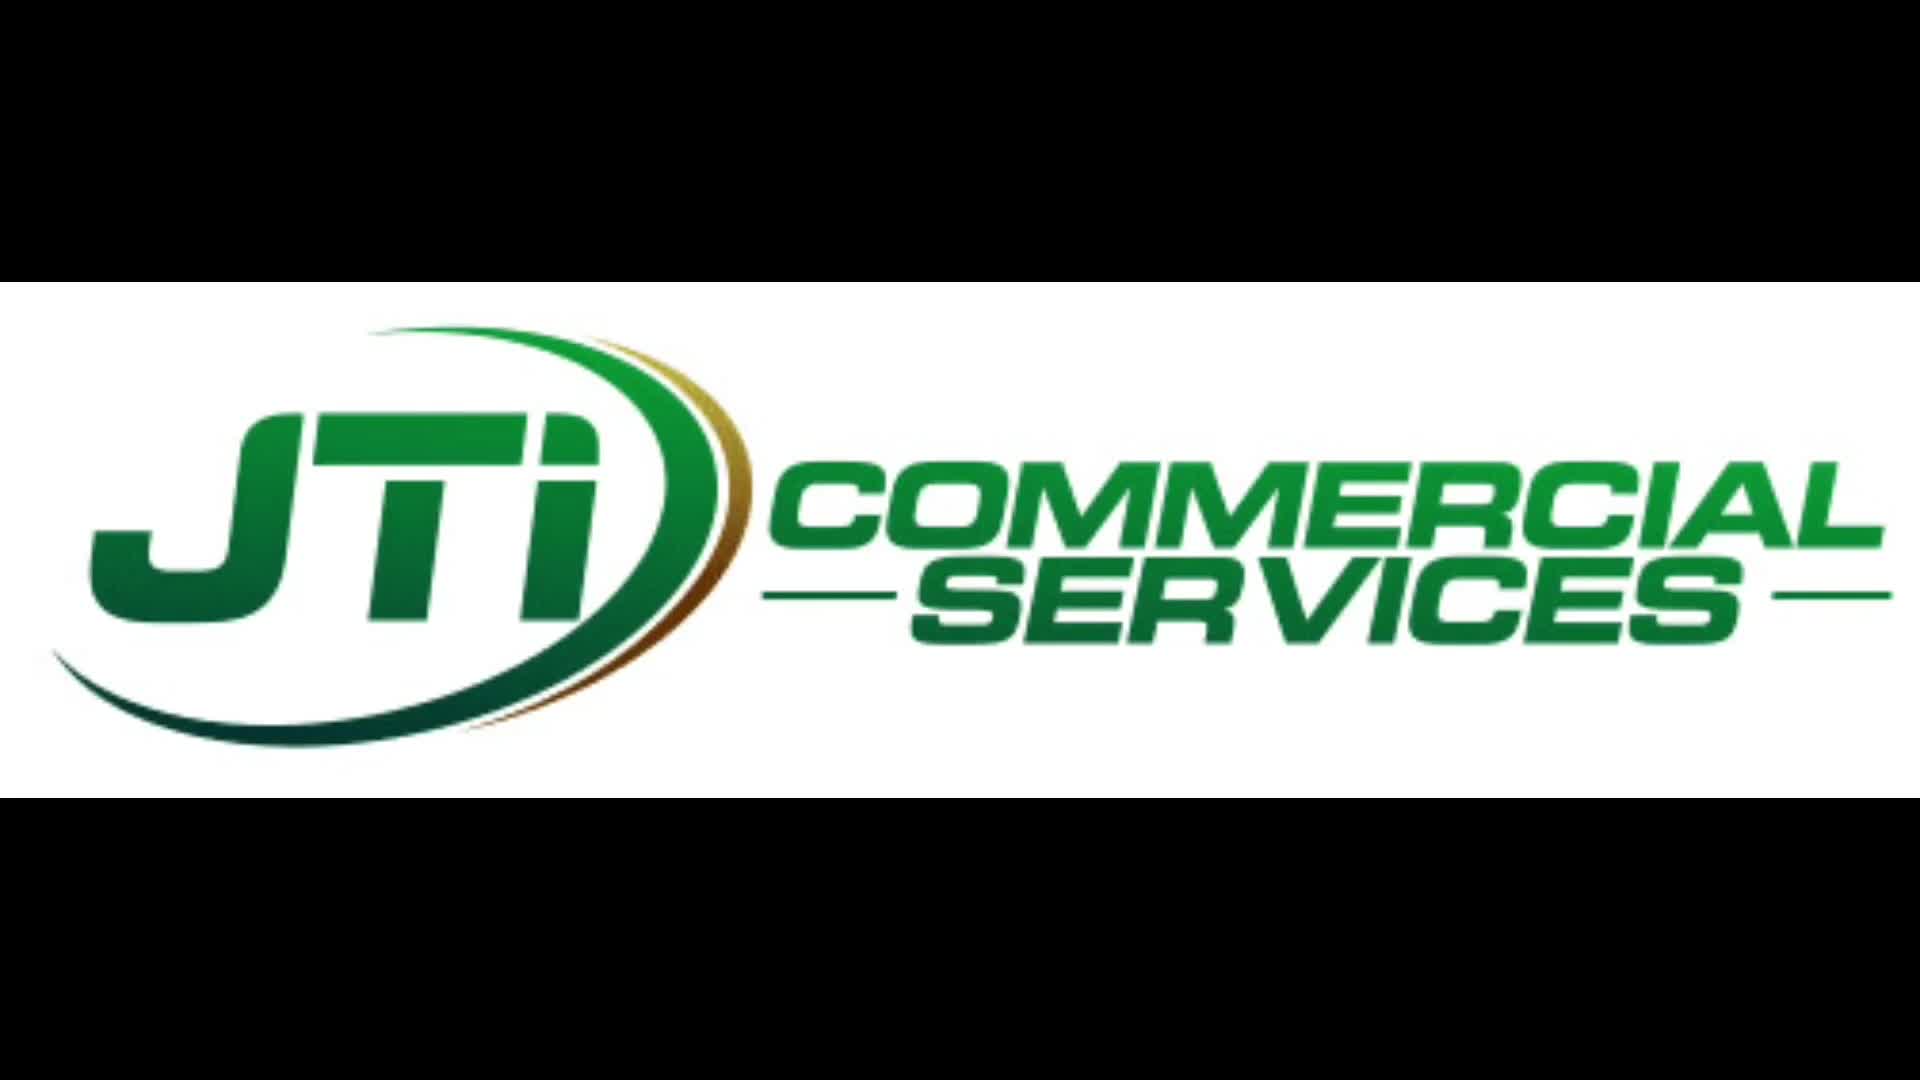 JTI Commercial Services